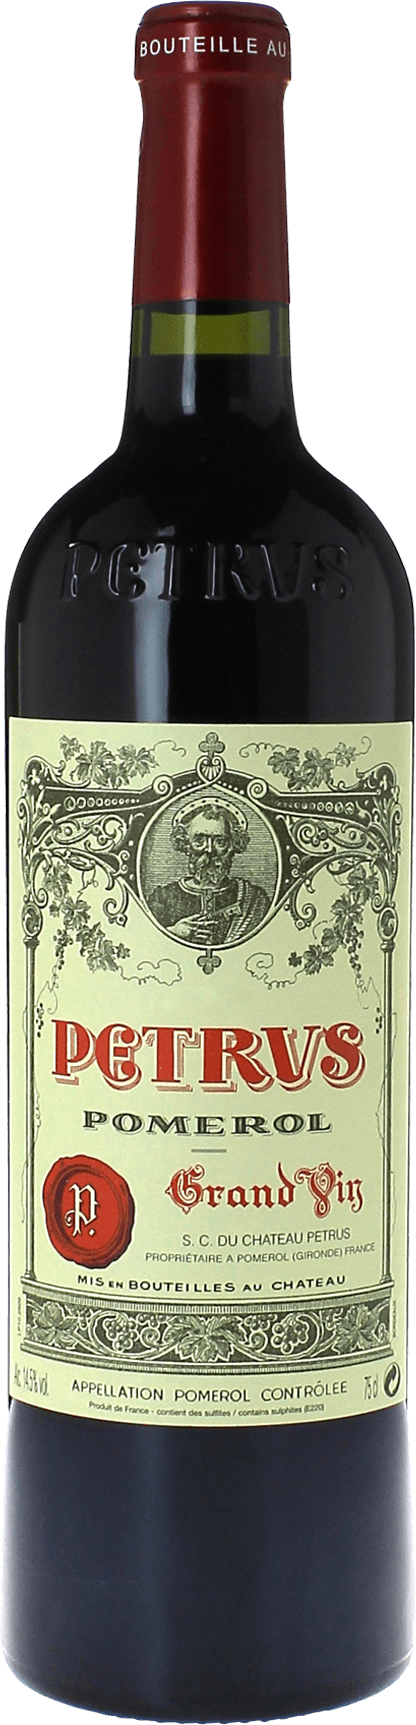 Petrus 2010  Pomerol, Bordeaux rouge